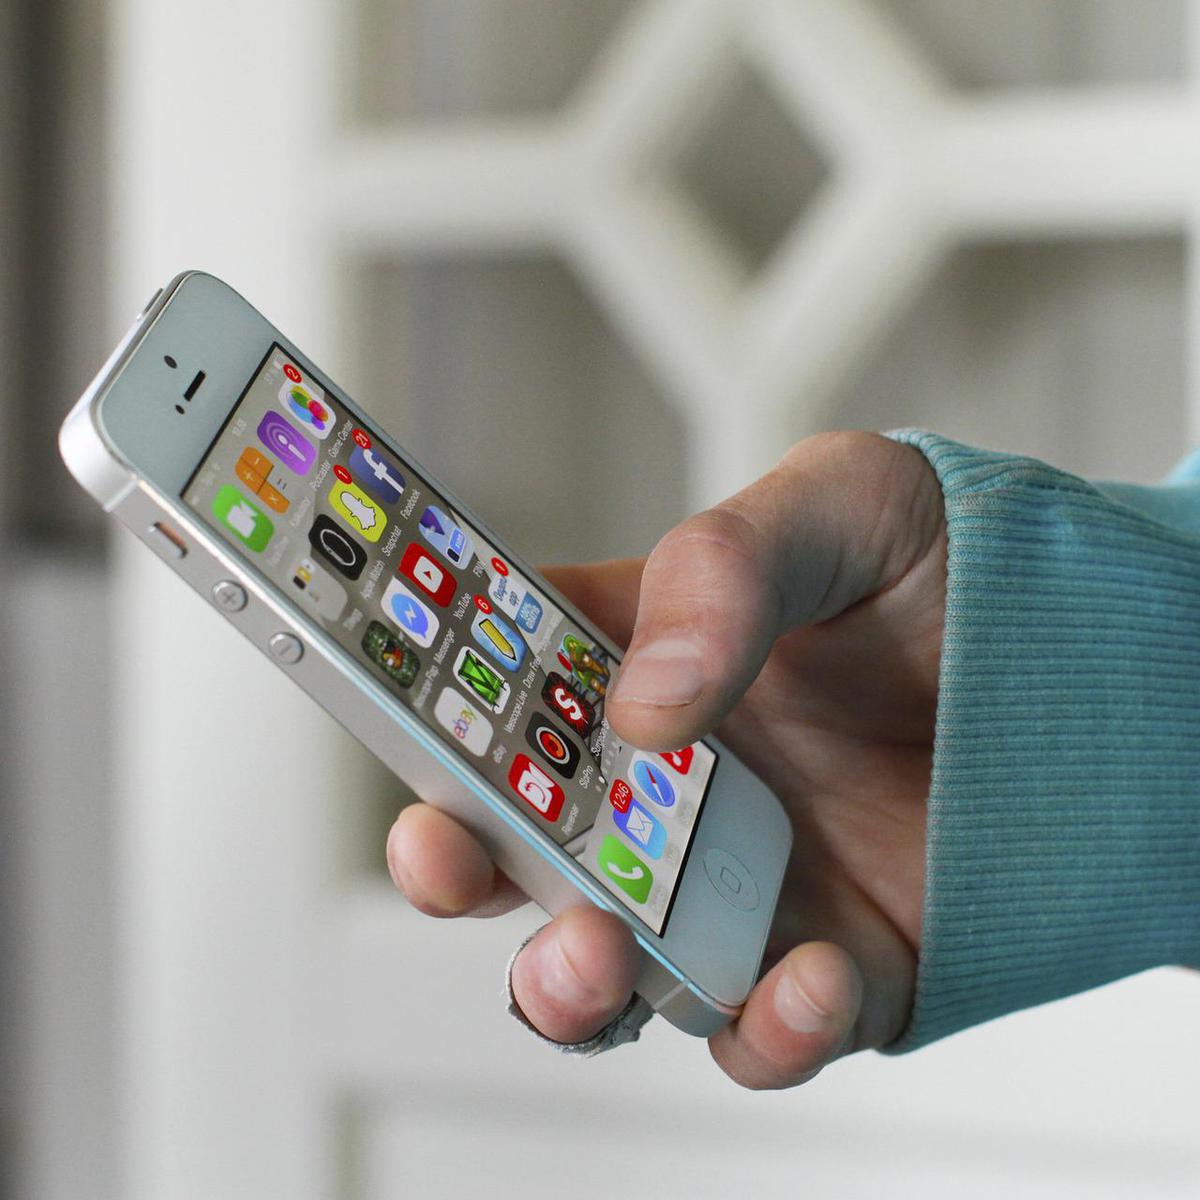 Cómo acelerar un móvil lento: trucos y consejos si tu iPhone o